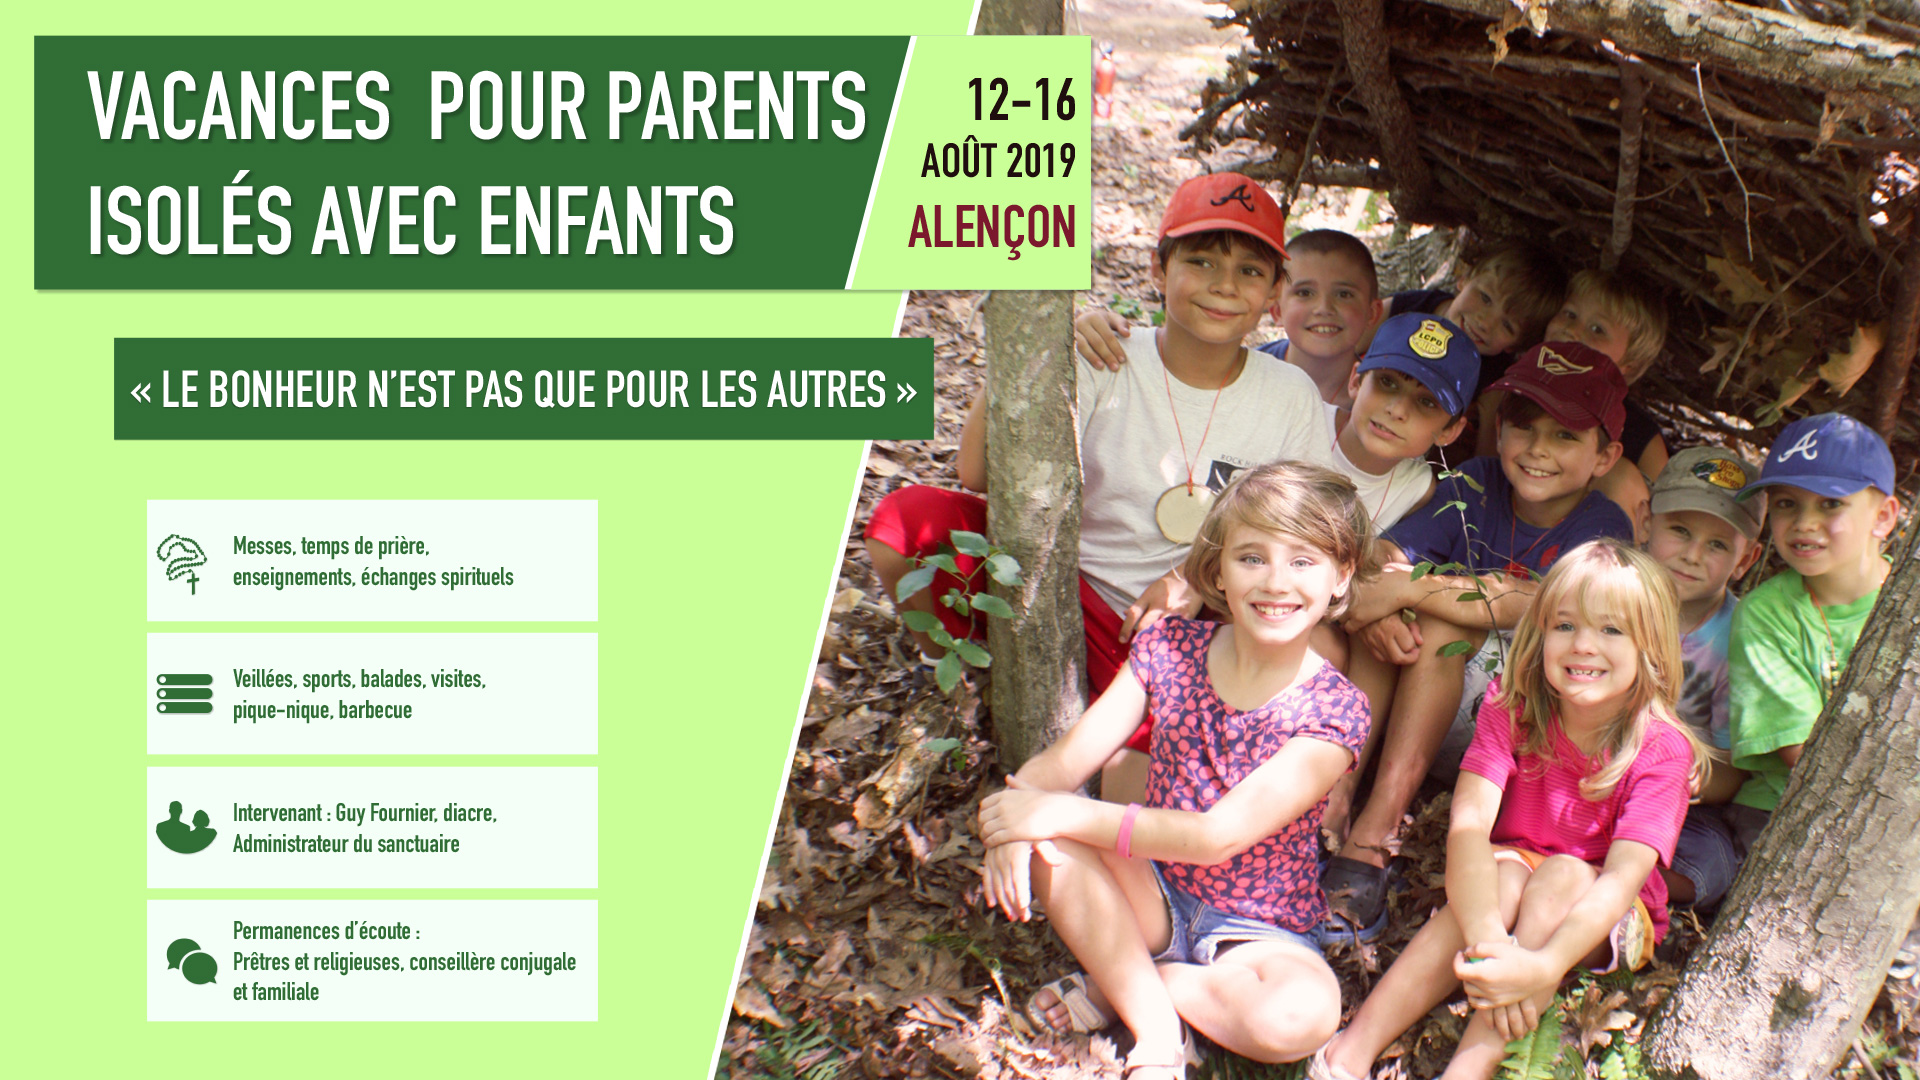 Vacances pour parents isolés avec enfants du 12 au 16 août 2019 à Alençon (61)